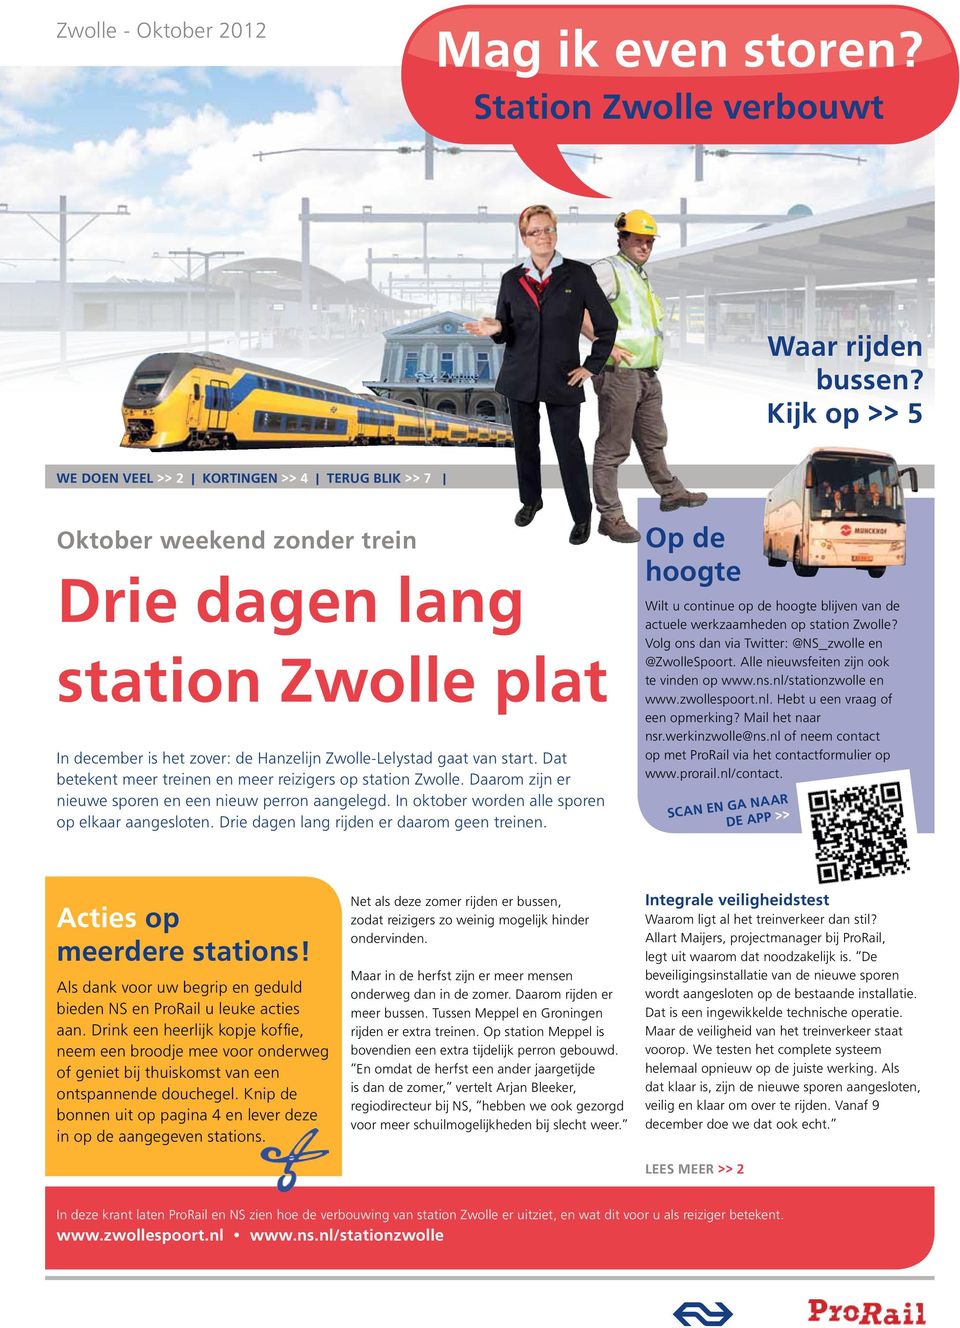 Dat betekent meer treinen en meer reizigers op station Zwolle. Daarom zijn er nieuwe sporen en een nieuw perron aangelegd. In oktober worden alle sporen op elkaar aangesloten.